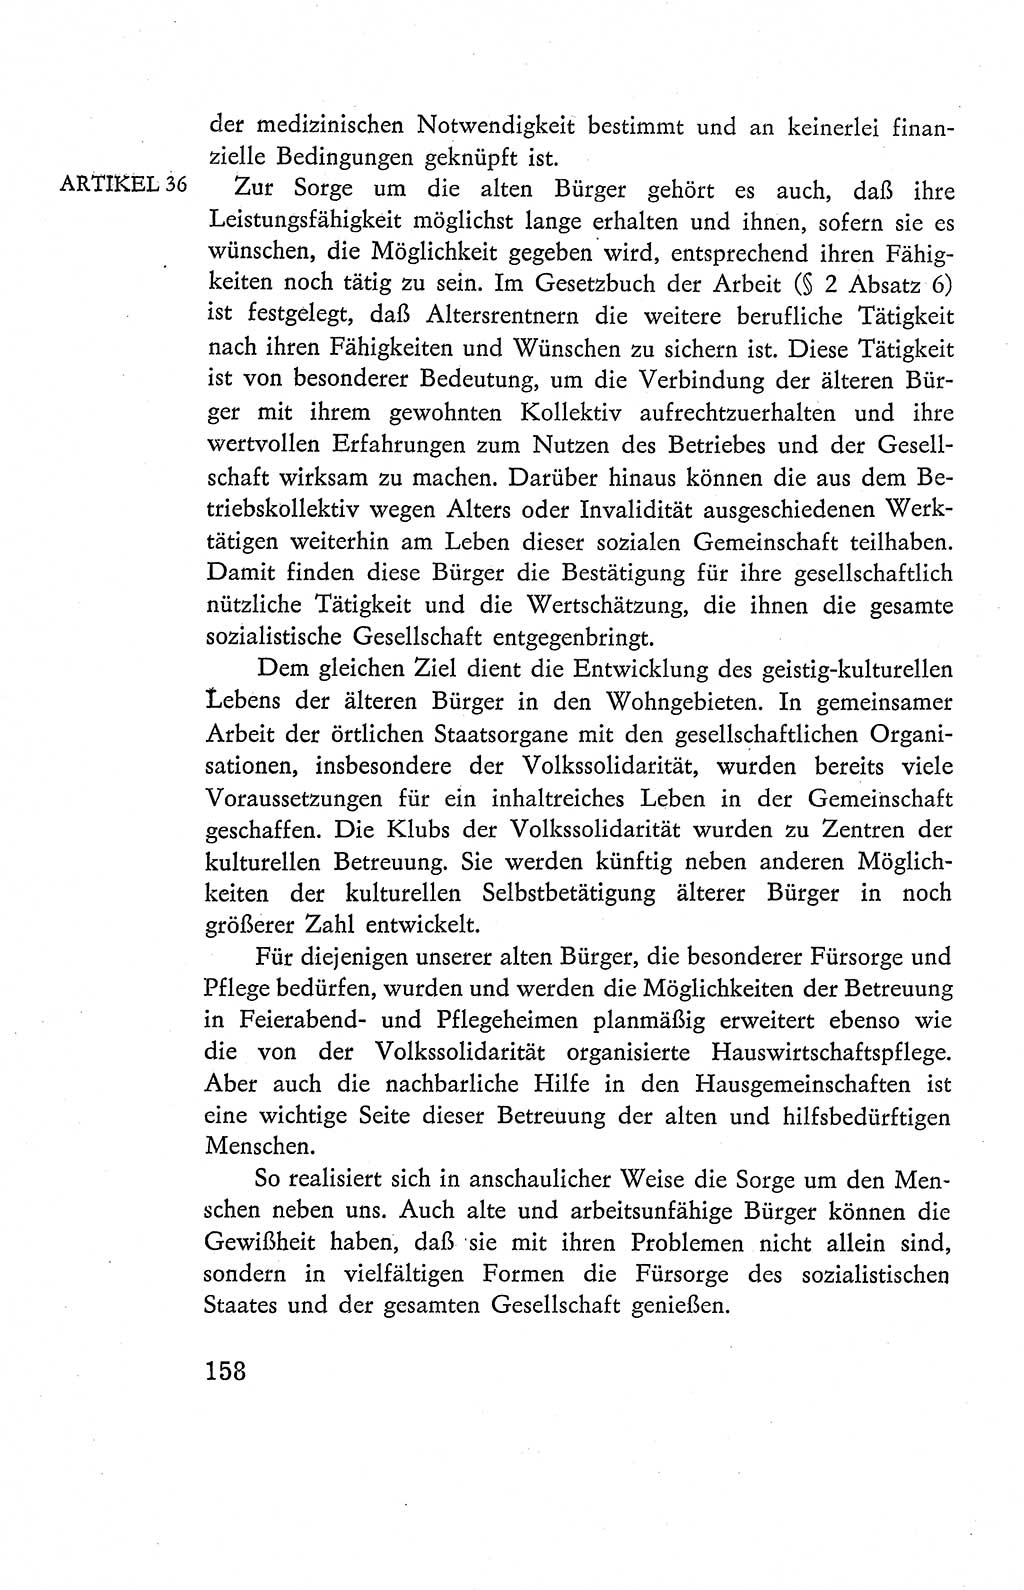 Verfassung der Deutschen Demokratischen Republik (DDR), Dokumente, Kommentar 1969, Band 2, Seite 158 (Verf. DDR Dok. Komm. 1969, Bd. 2, S. 158)